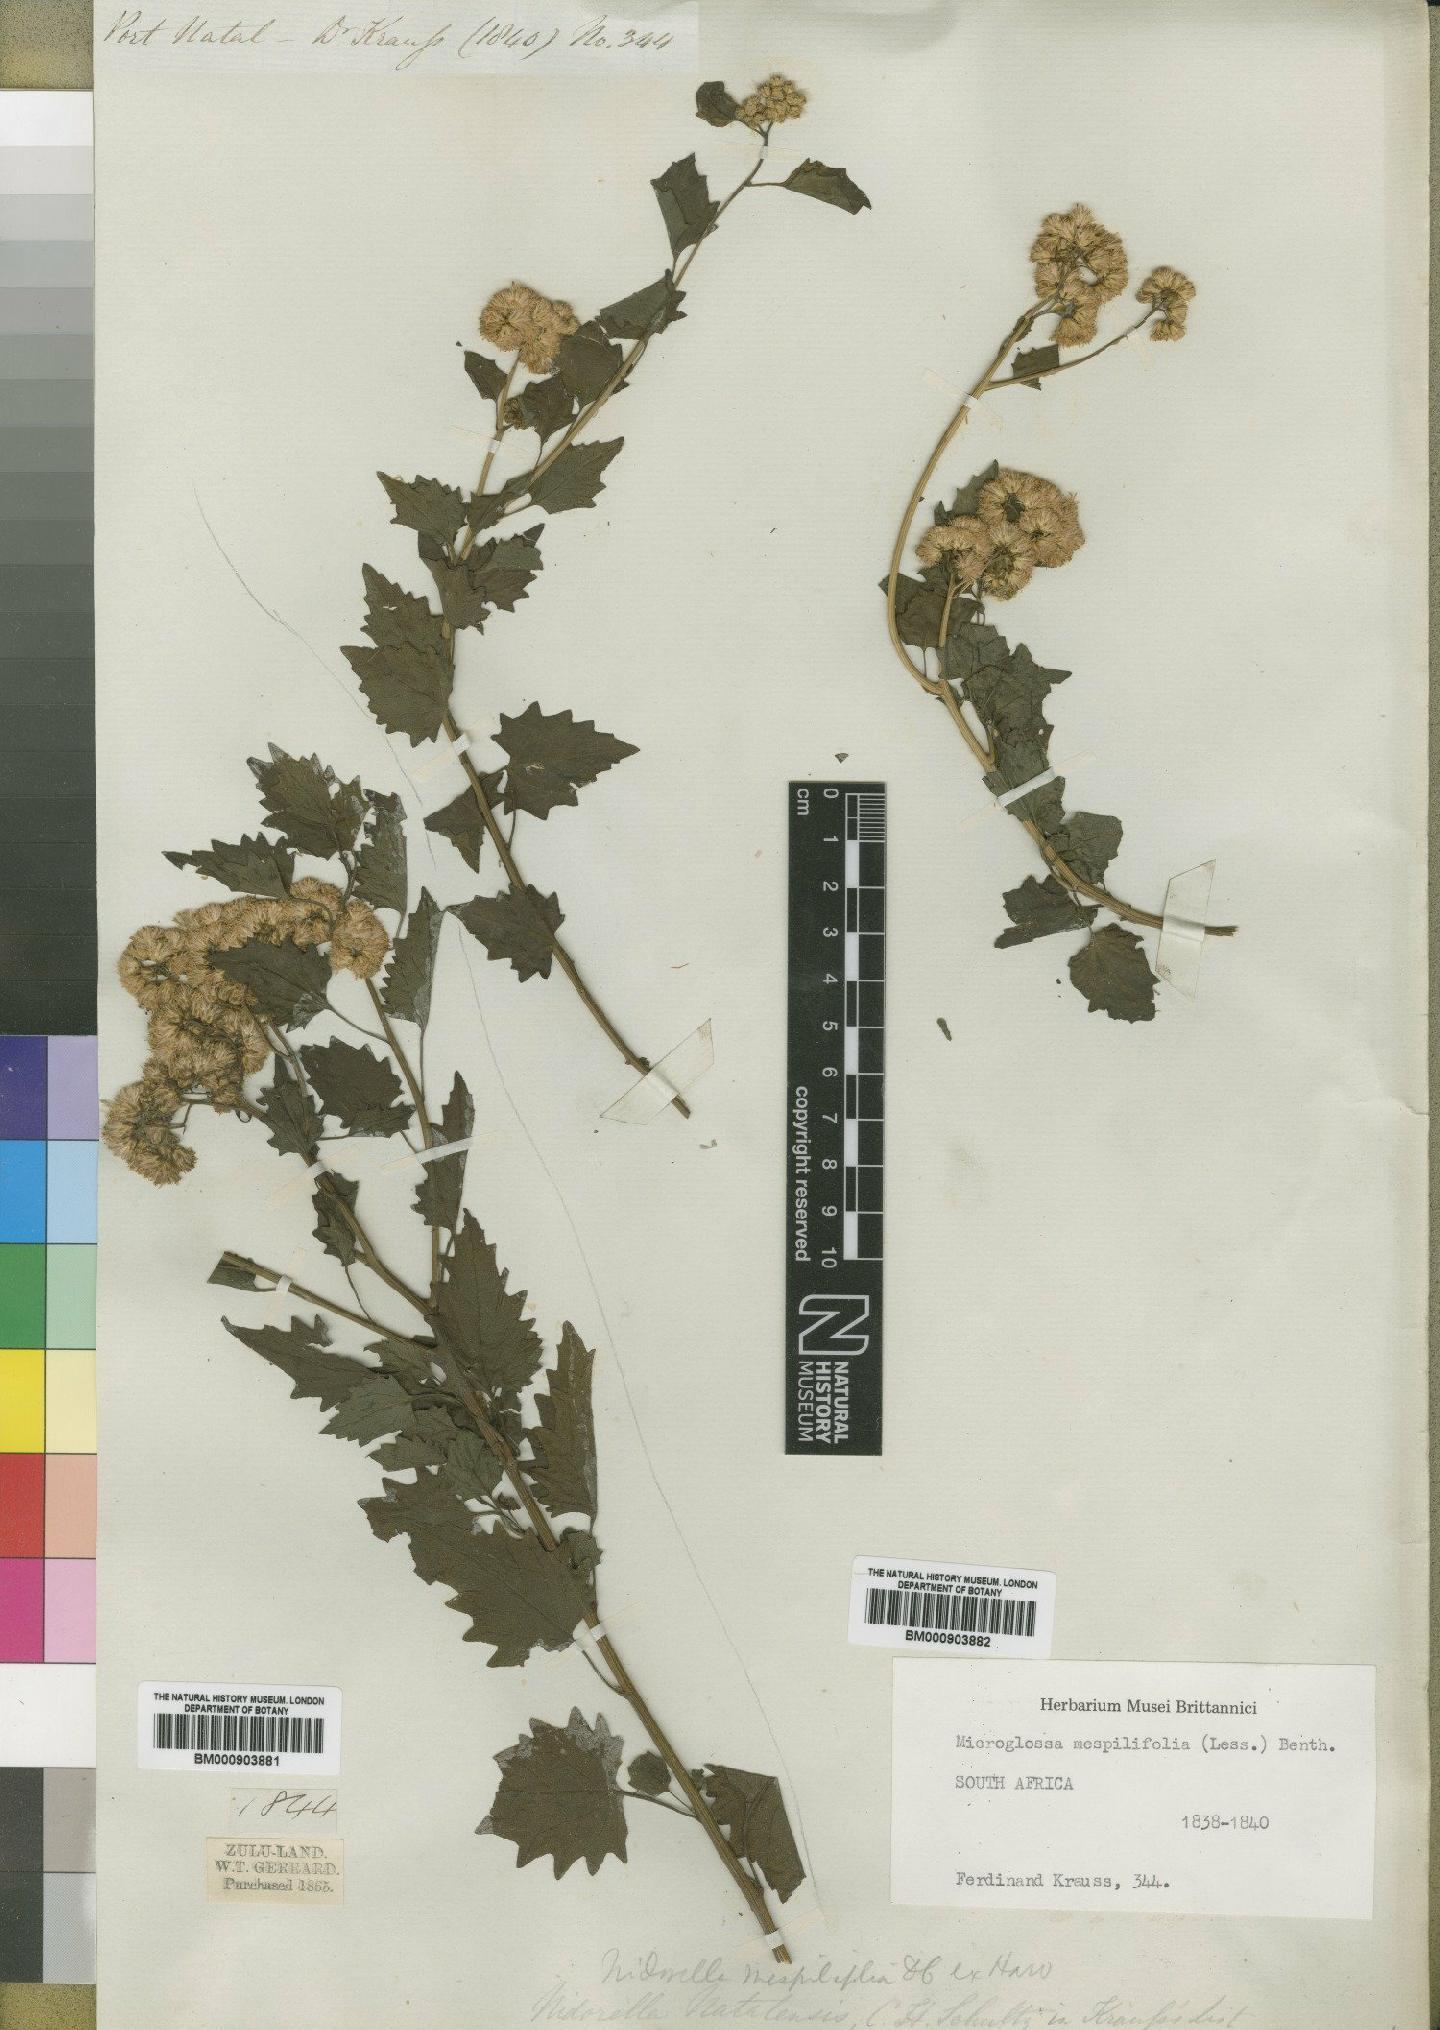 To NHMUK collection (Microglossa mespilifolia (Less) Benth.; Type; NHMUK:ecatalogue:4528929)